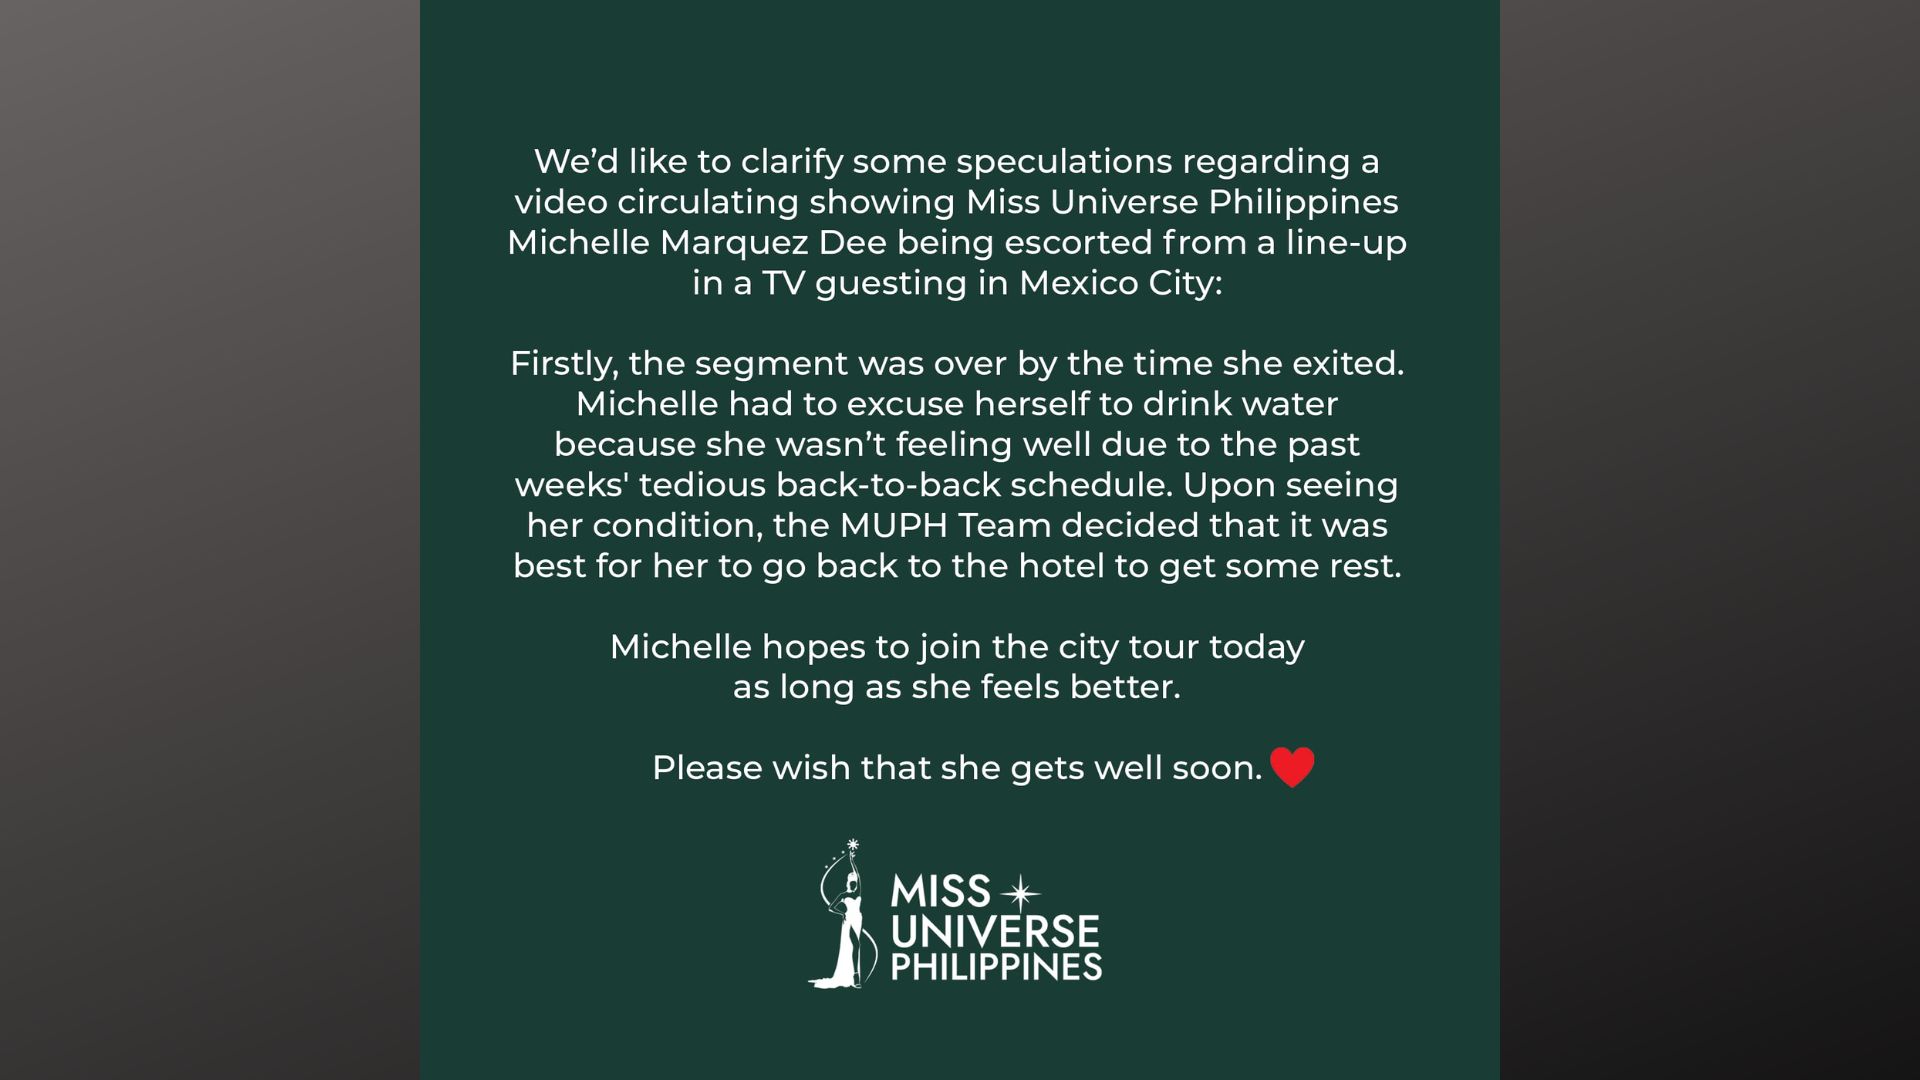 Miss Universe PH nilinaw ang tungkol sa kumakalat na video na pag-pull out kay Michelle Dee sa isang TV show sa Mexico City